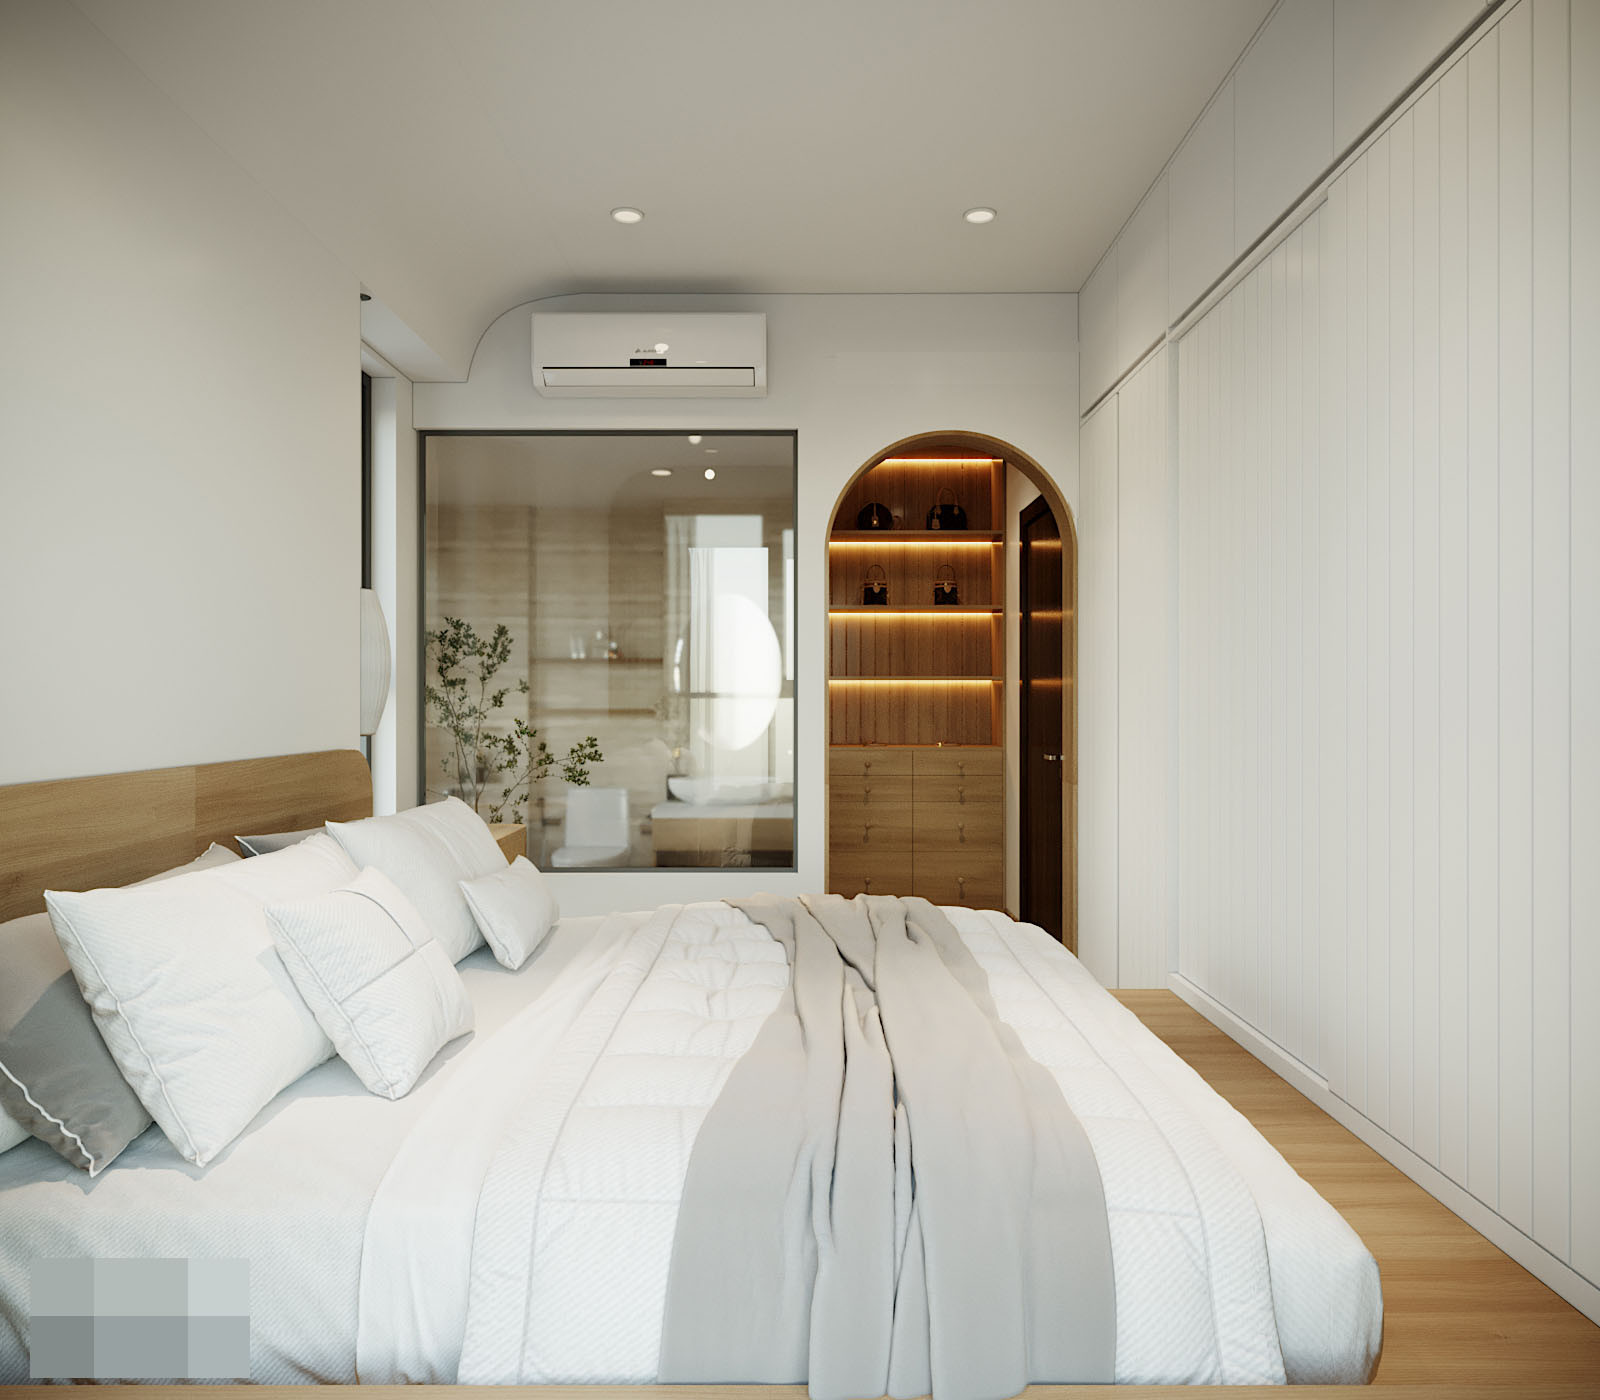 Căn hộ 3 ngủ hiện đại, nội thất đơn giản nhưng sở hữu các góc đẹp ‘thần thánh’